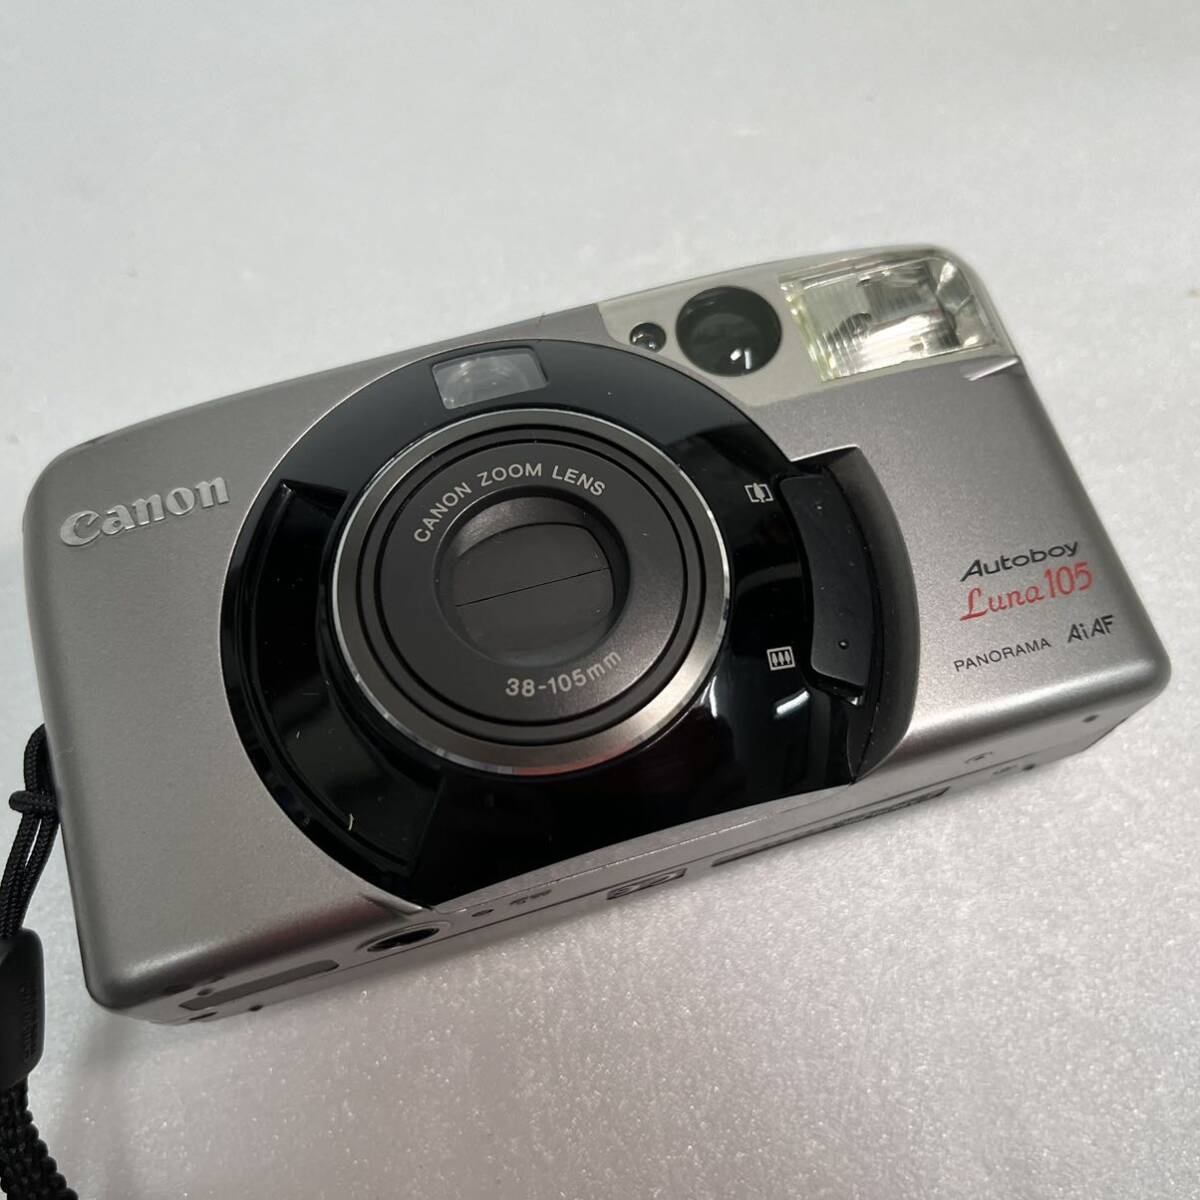 コンパクトフィルムカメラ Canon AUTOBOY Luna105 PANORAMA AiAF 38-105mm キヤノン_画像10